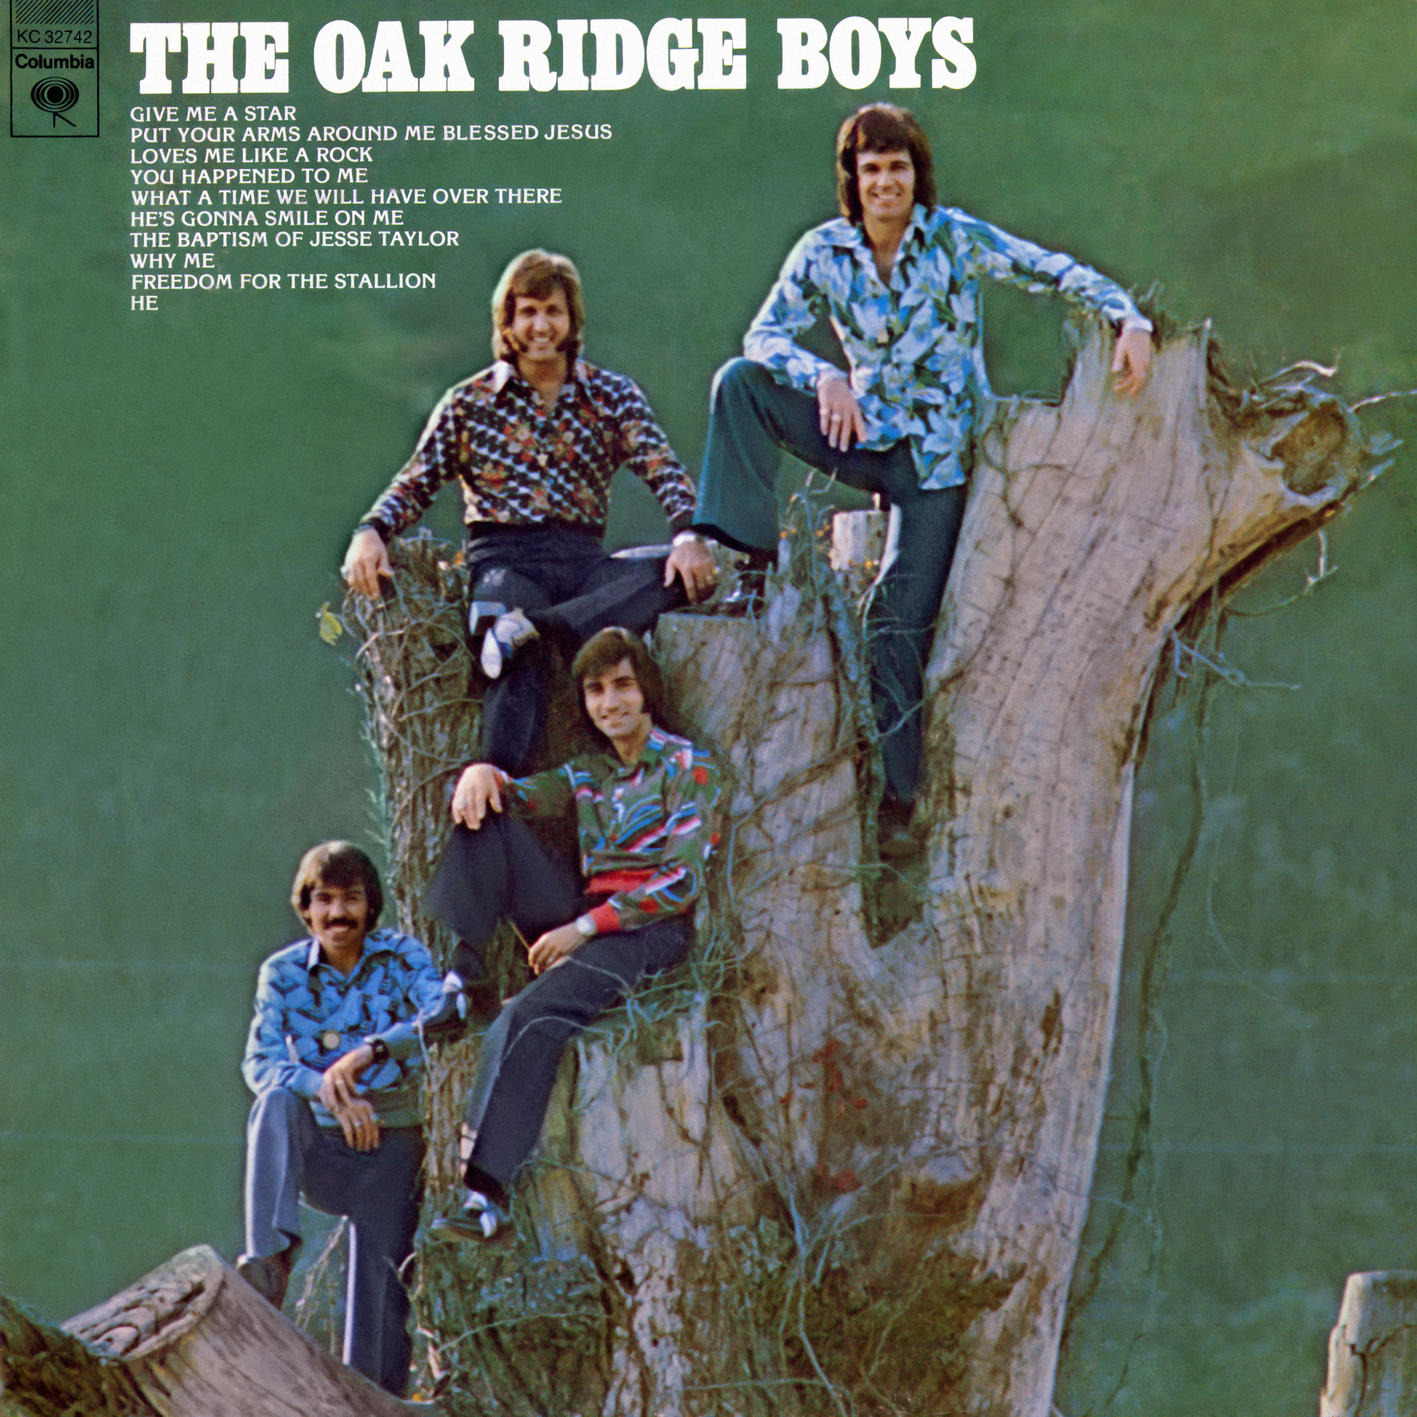 The Oak Ridge Boys - The Oak Ridge Boys (1974/2024) [FLAC 24bit/192kHz] Download